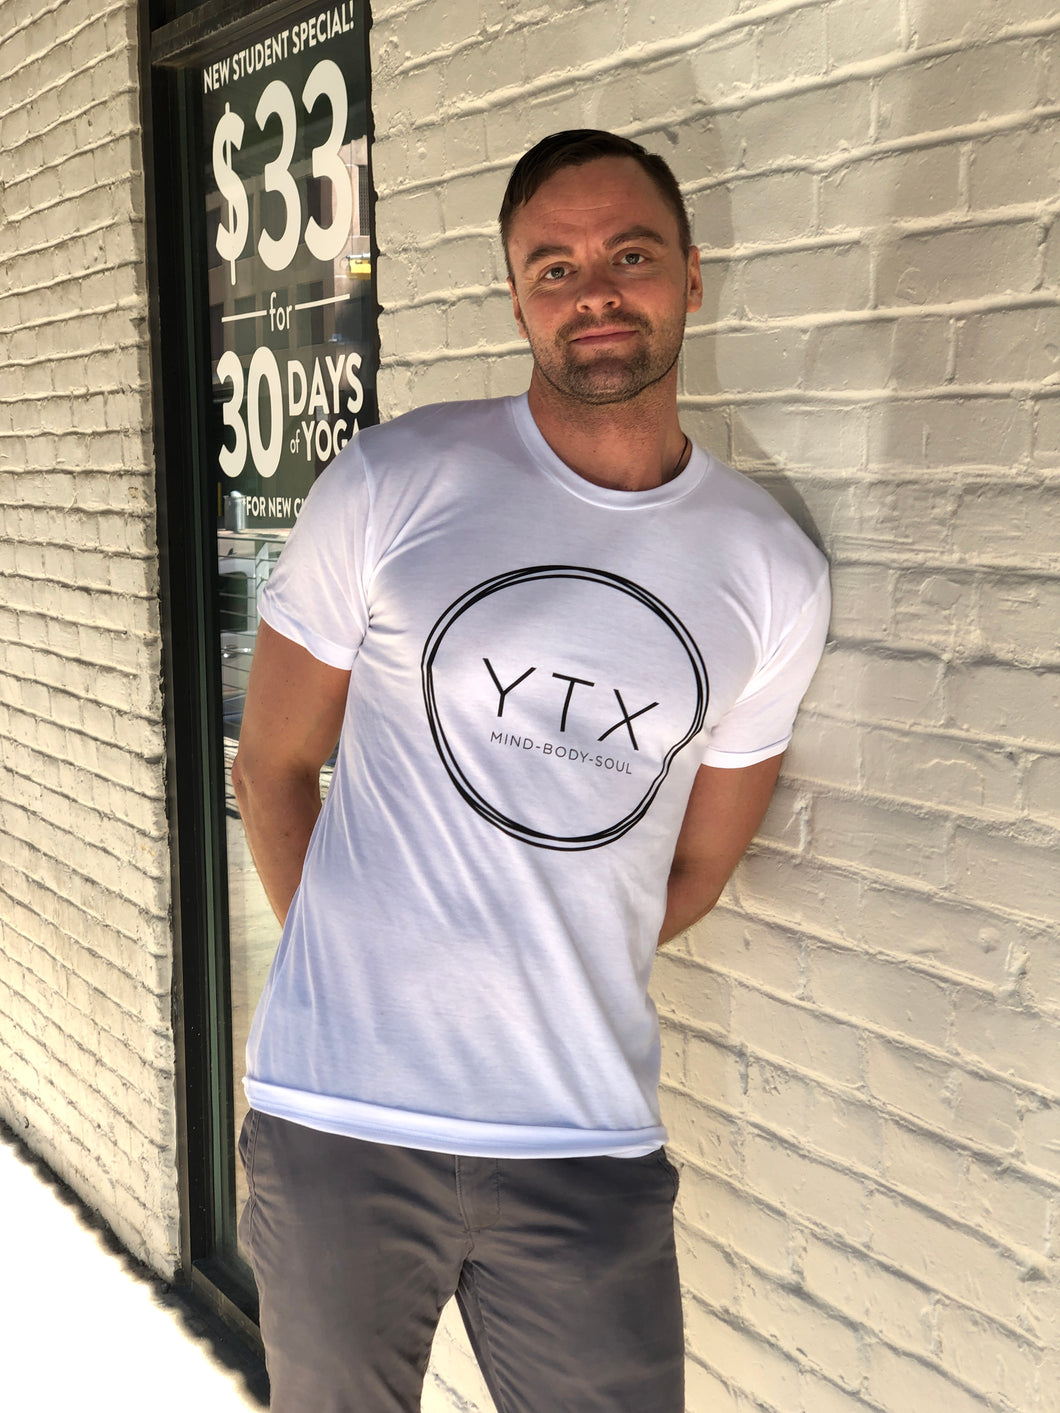 YTX T-Shirt